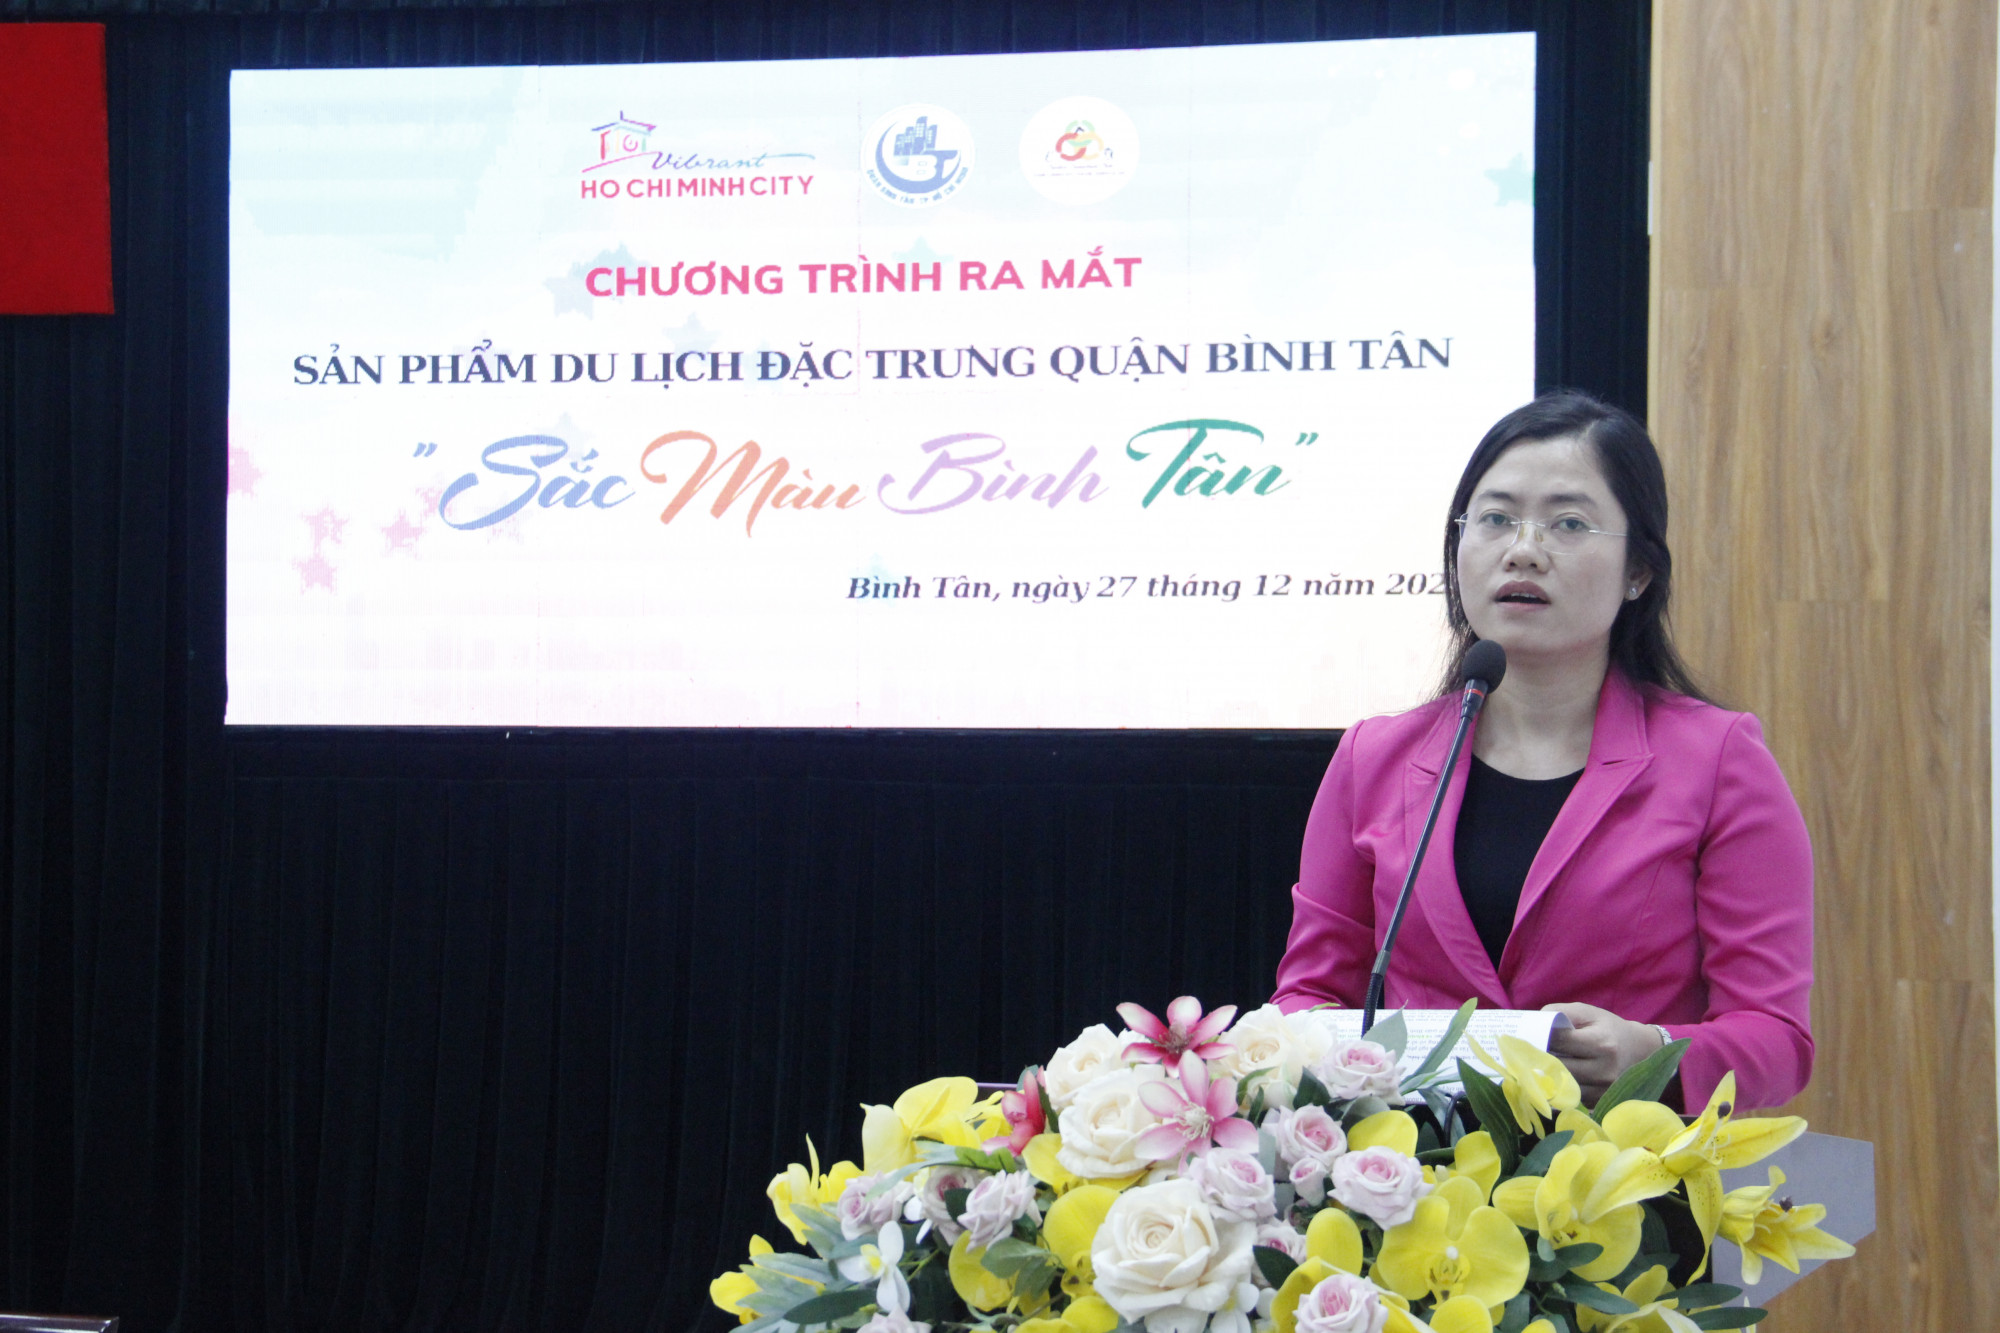 Bà Lê Thị Ngọc Dung thông tin về sản phẩm du lịch “Sắc Màu Bình Tân”.